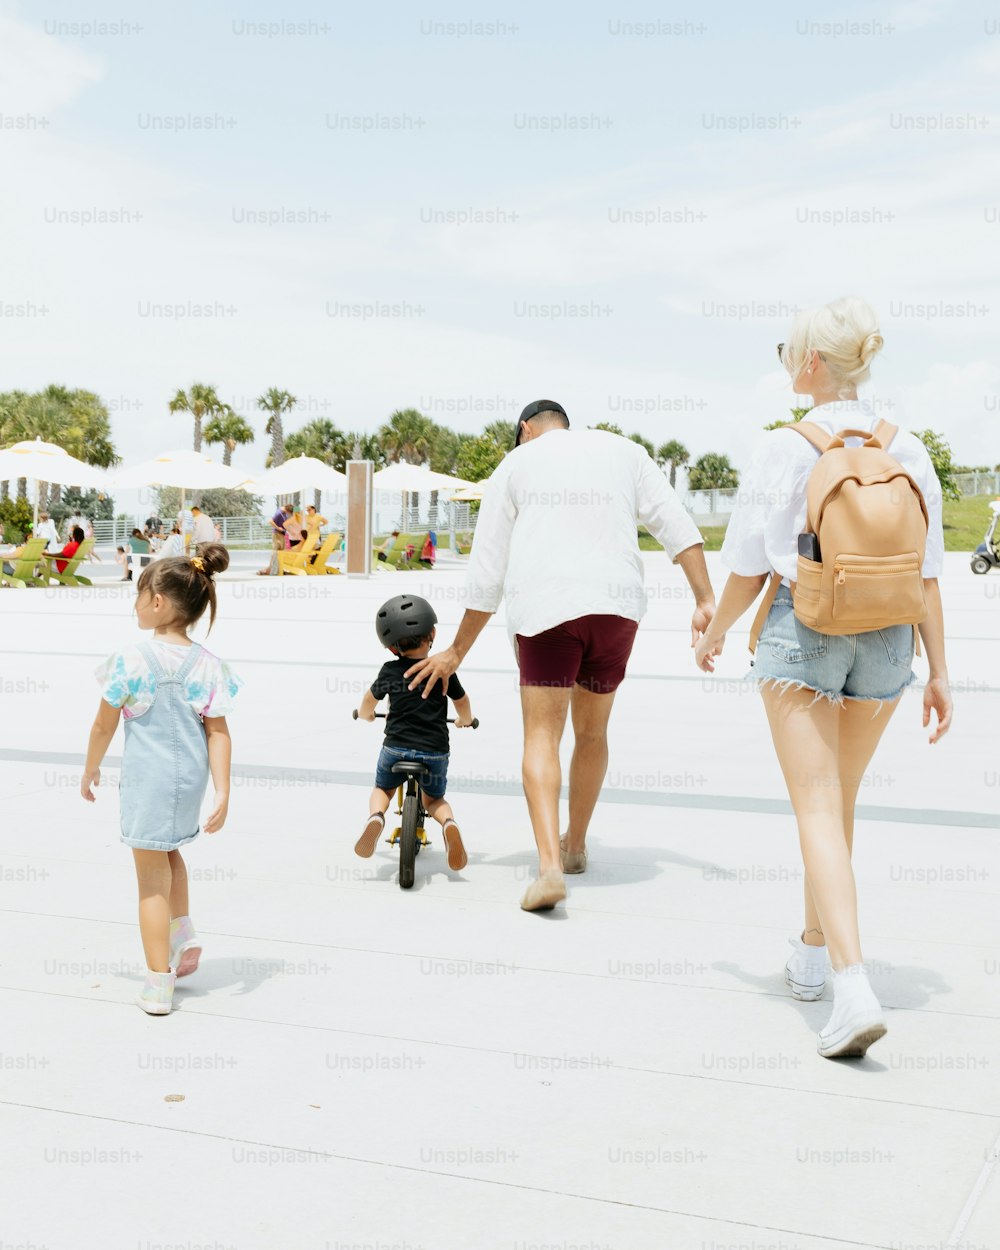 Una mujer y dos niños caminando por una acera